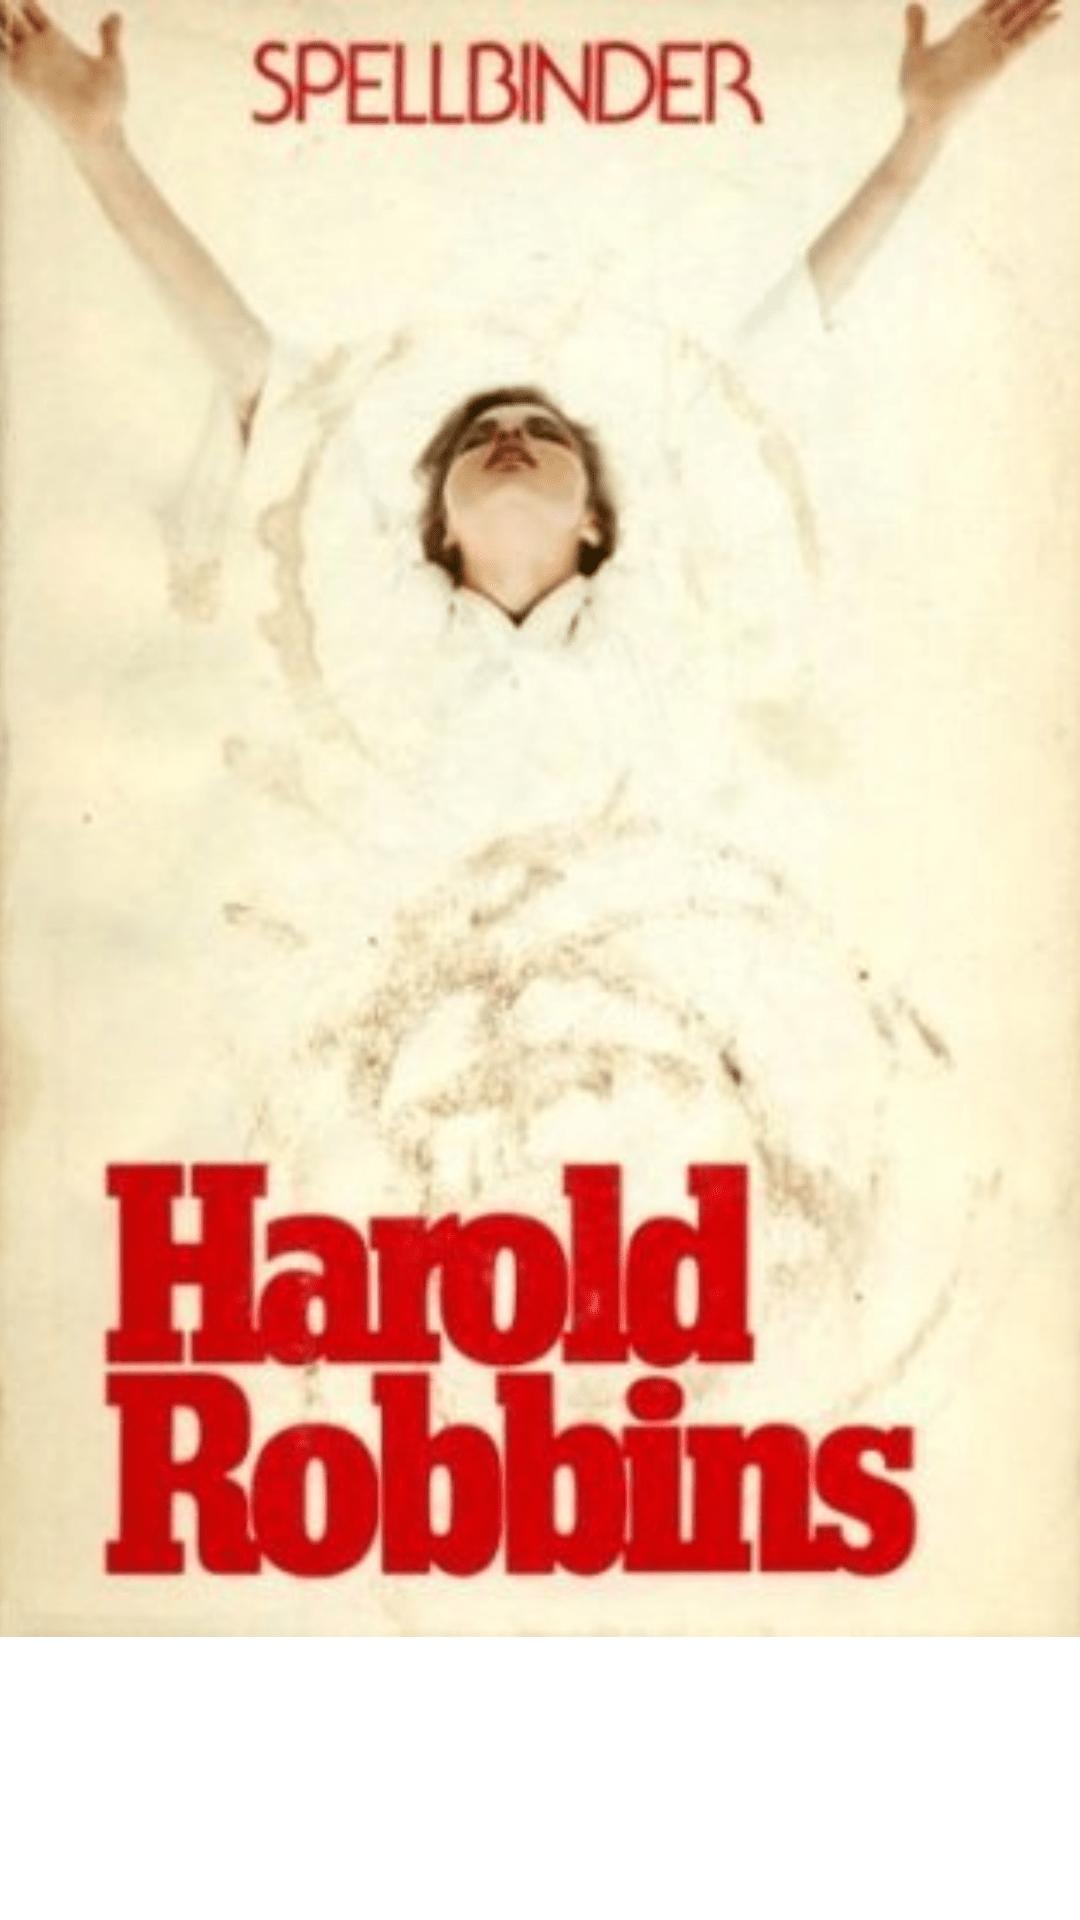 Spellbinder by Harold Robbins